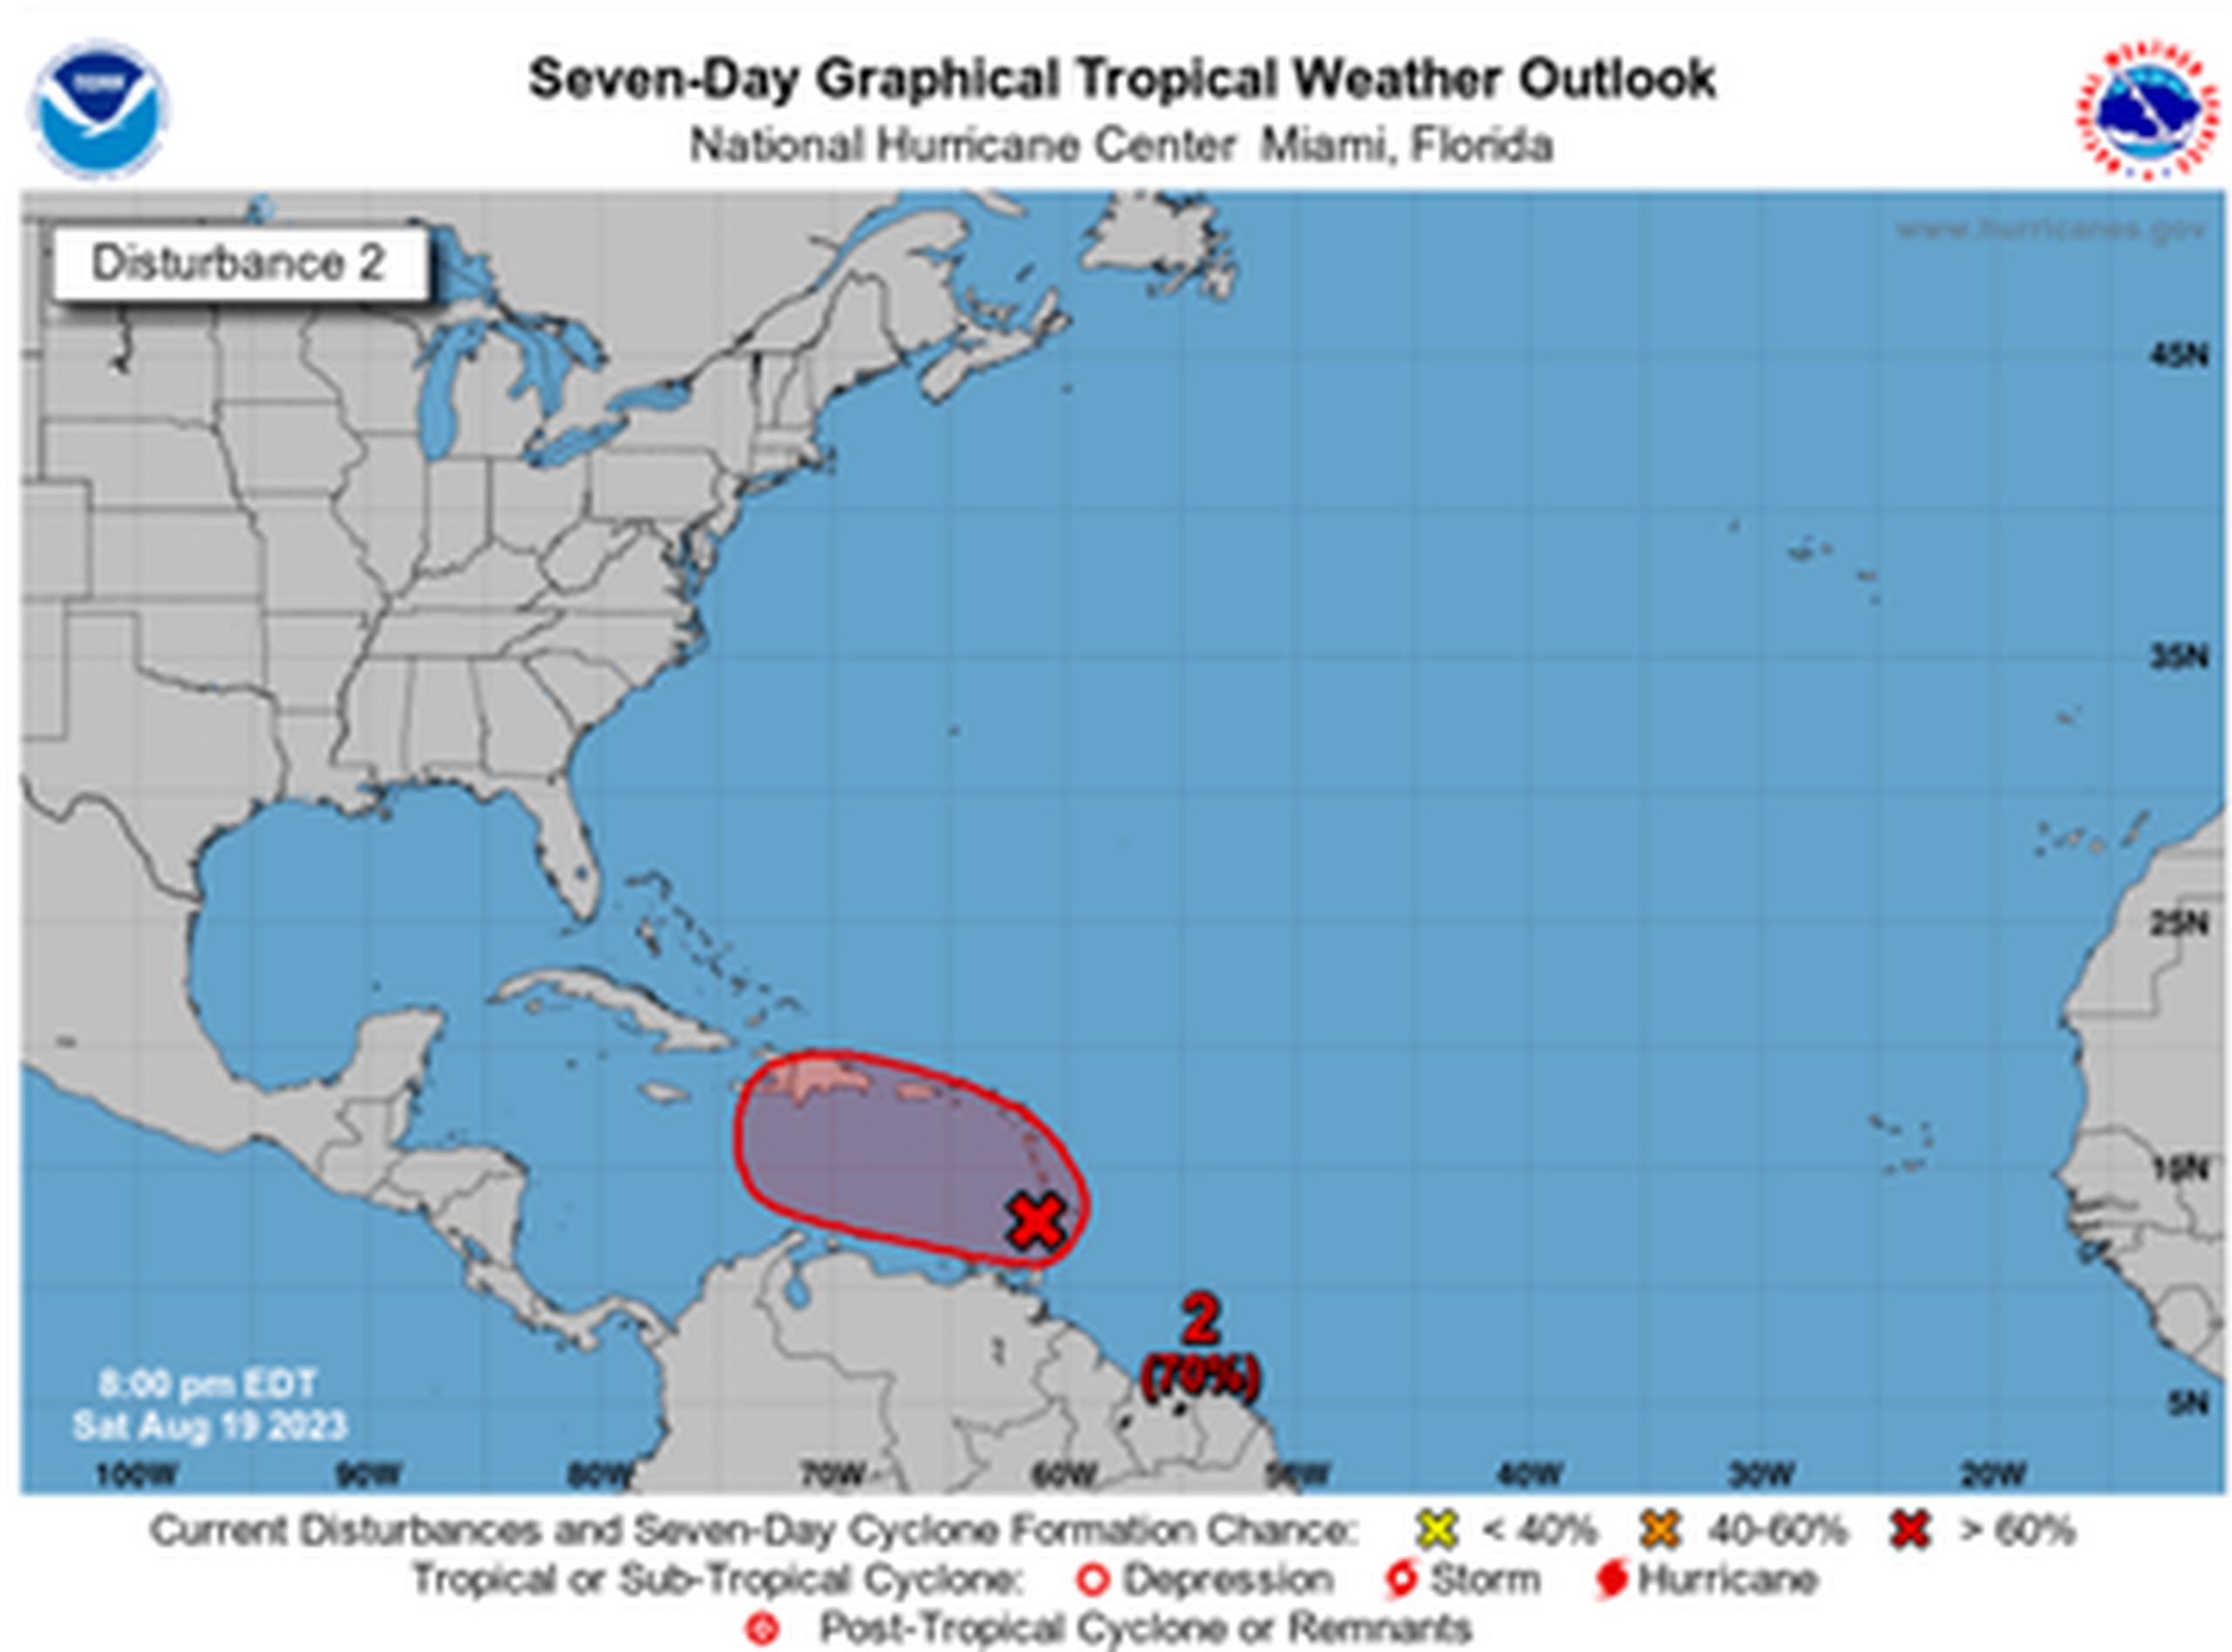 Se exhorta a la ciudadanía a continuar monitoreando las actualizaciones de pronóstico emitidos por el Centro Nacional de Huracanes y el Servicio Nacional de Meteorología ante la llegada de este sistema.